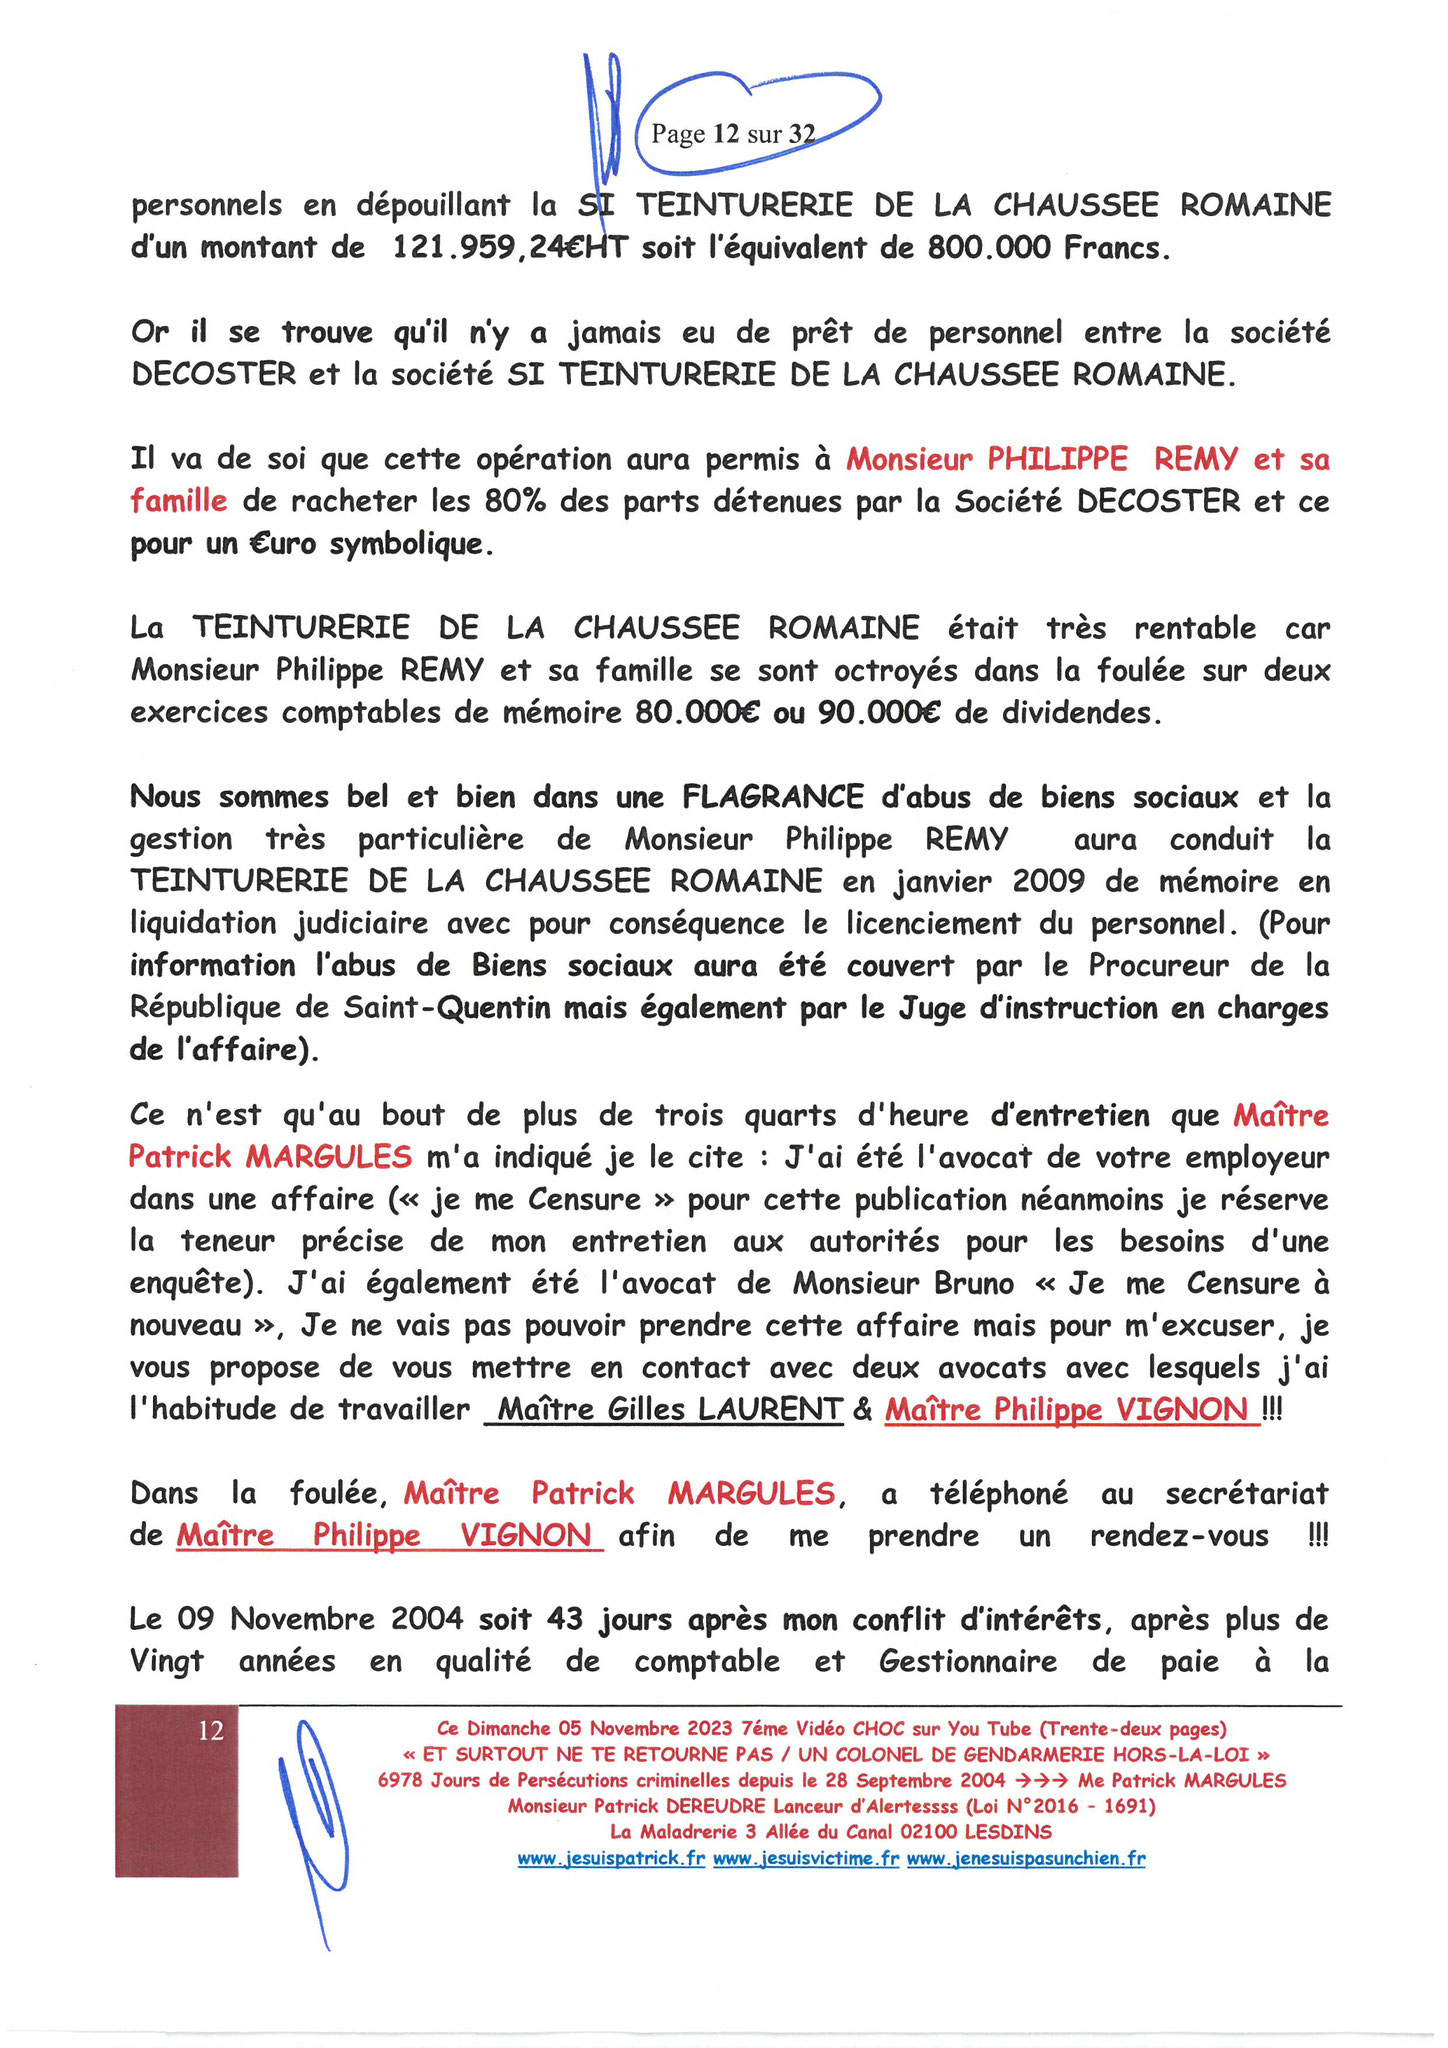 Page 12/32 7ème VIDEO ET SURTOUT NE TE RETOURNE PAS !!! Dimanche 05 Novembre 2023 à 19h10 OPERATION MAINS PROPRES #StopCorruptionStop  www.jenesuispasunchien.fr www.jesuisvictime.fr www.jesuispatrick.fr PARJURE & CORRUPTION AU COEUR MÊME DE LA JUSTICE